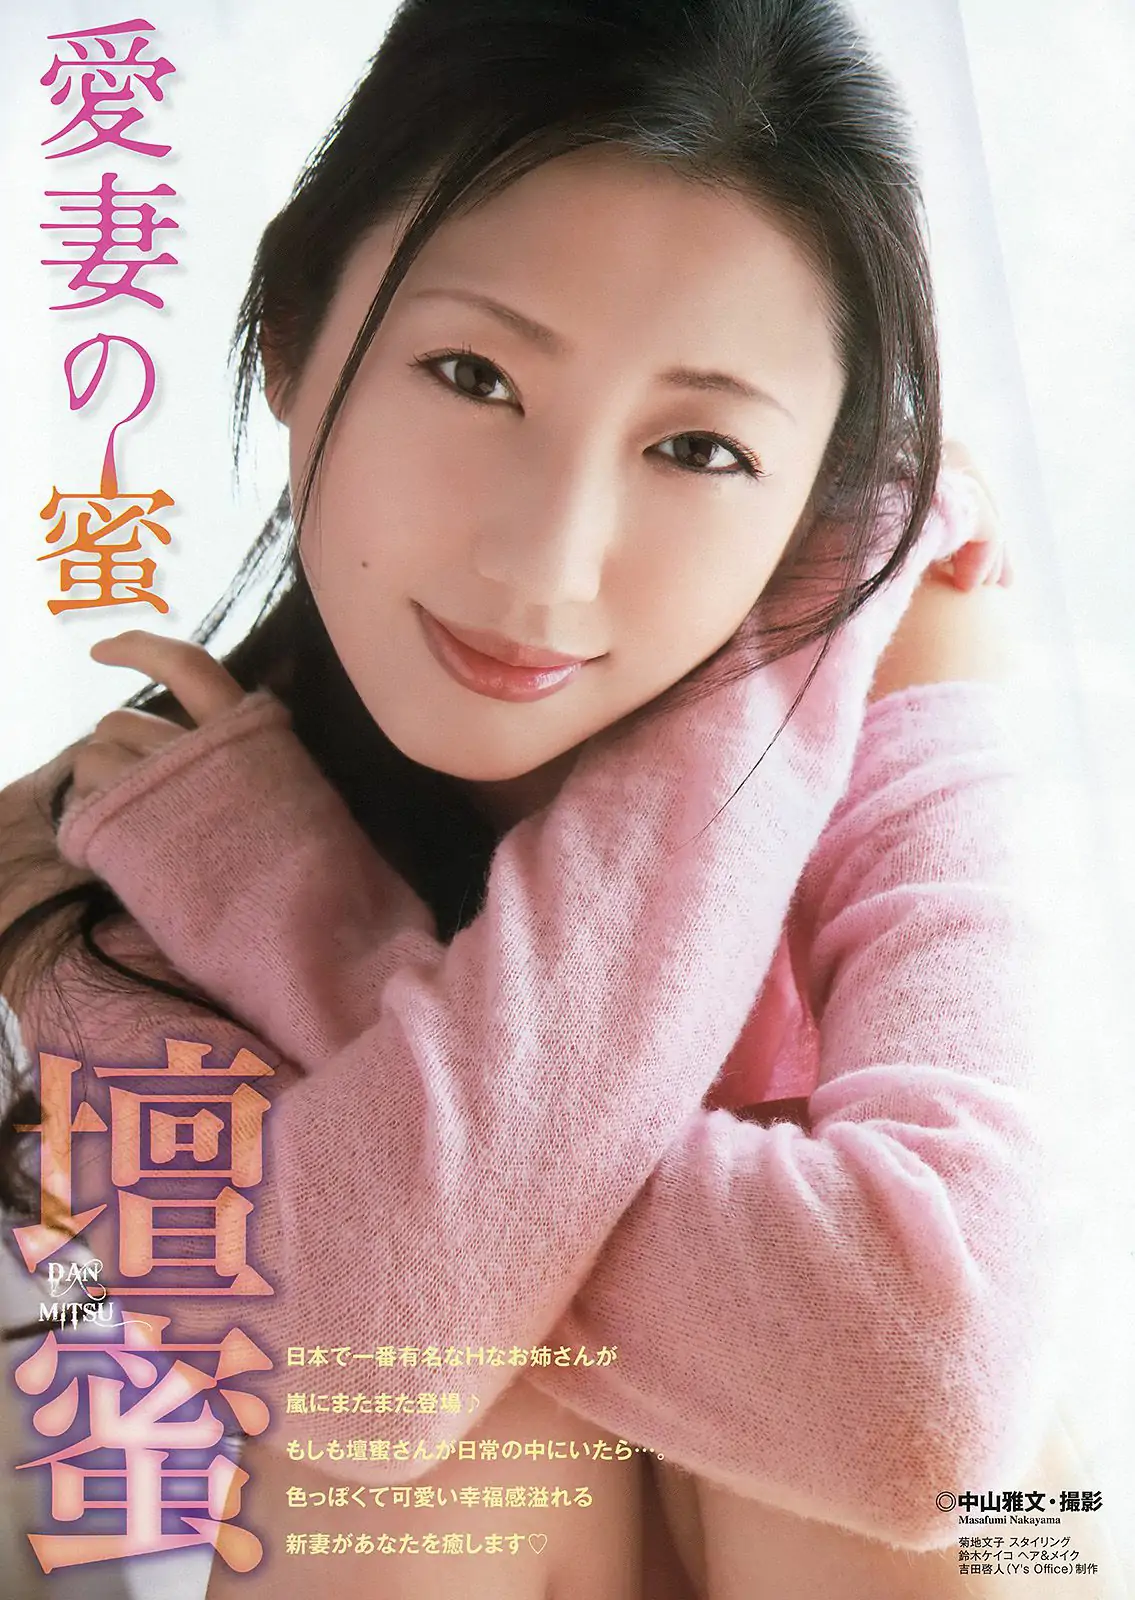 壇蜜 天使もえ [Young Animal Arashi 岚特刊] No.05 2015年 写真杂志